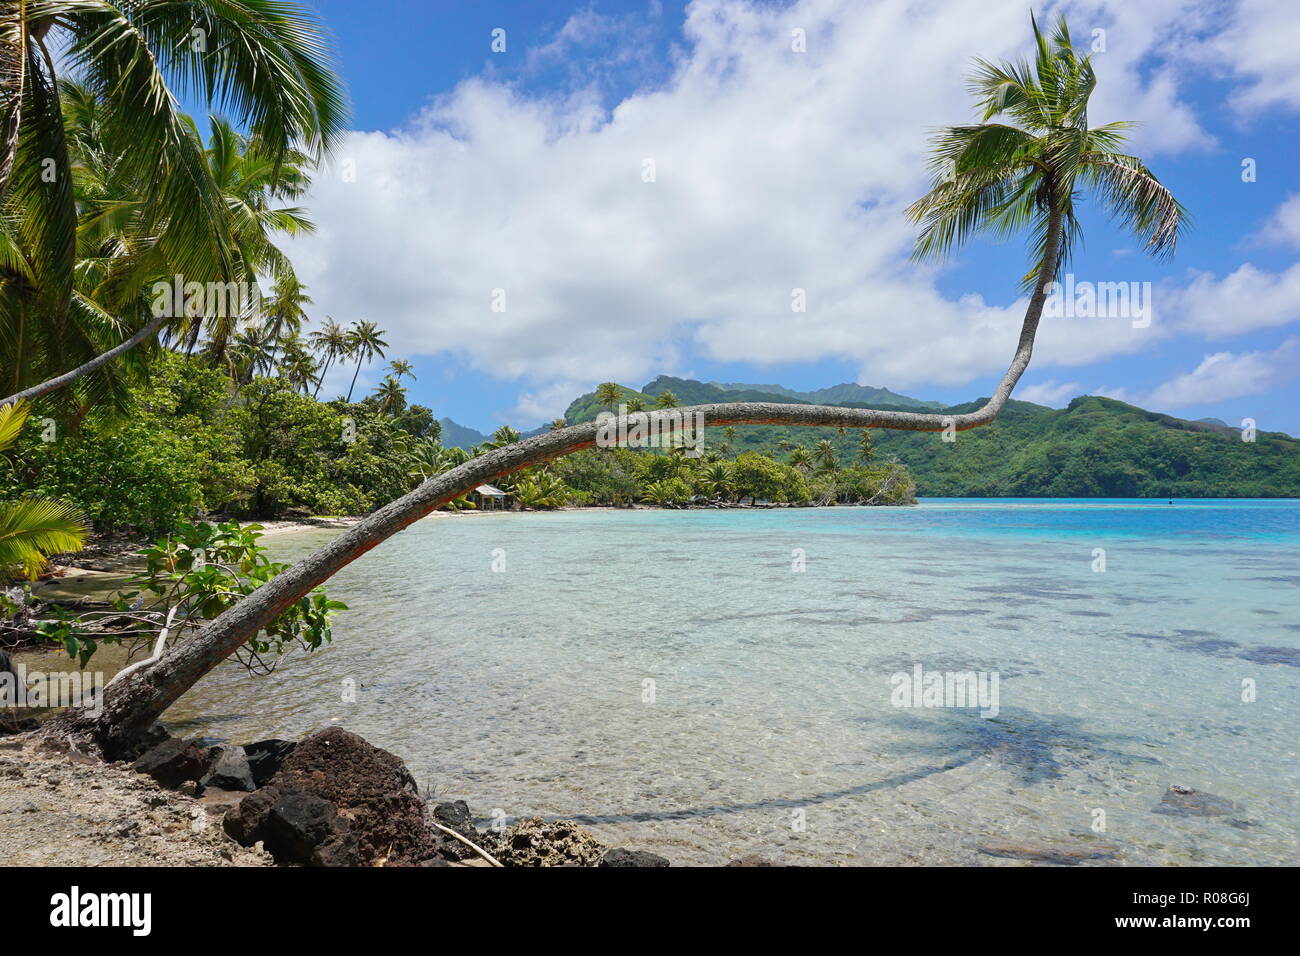 Seascape tropicale, una noce di cocco Palm tree si appoggia su acqua chiara nella Polinesia francese, Huahine isola, oceano pacifico del sud Foto Stock